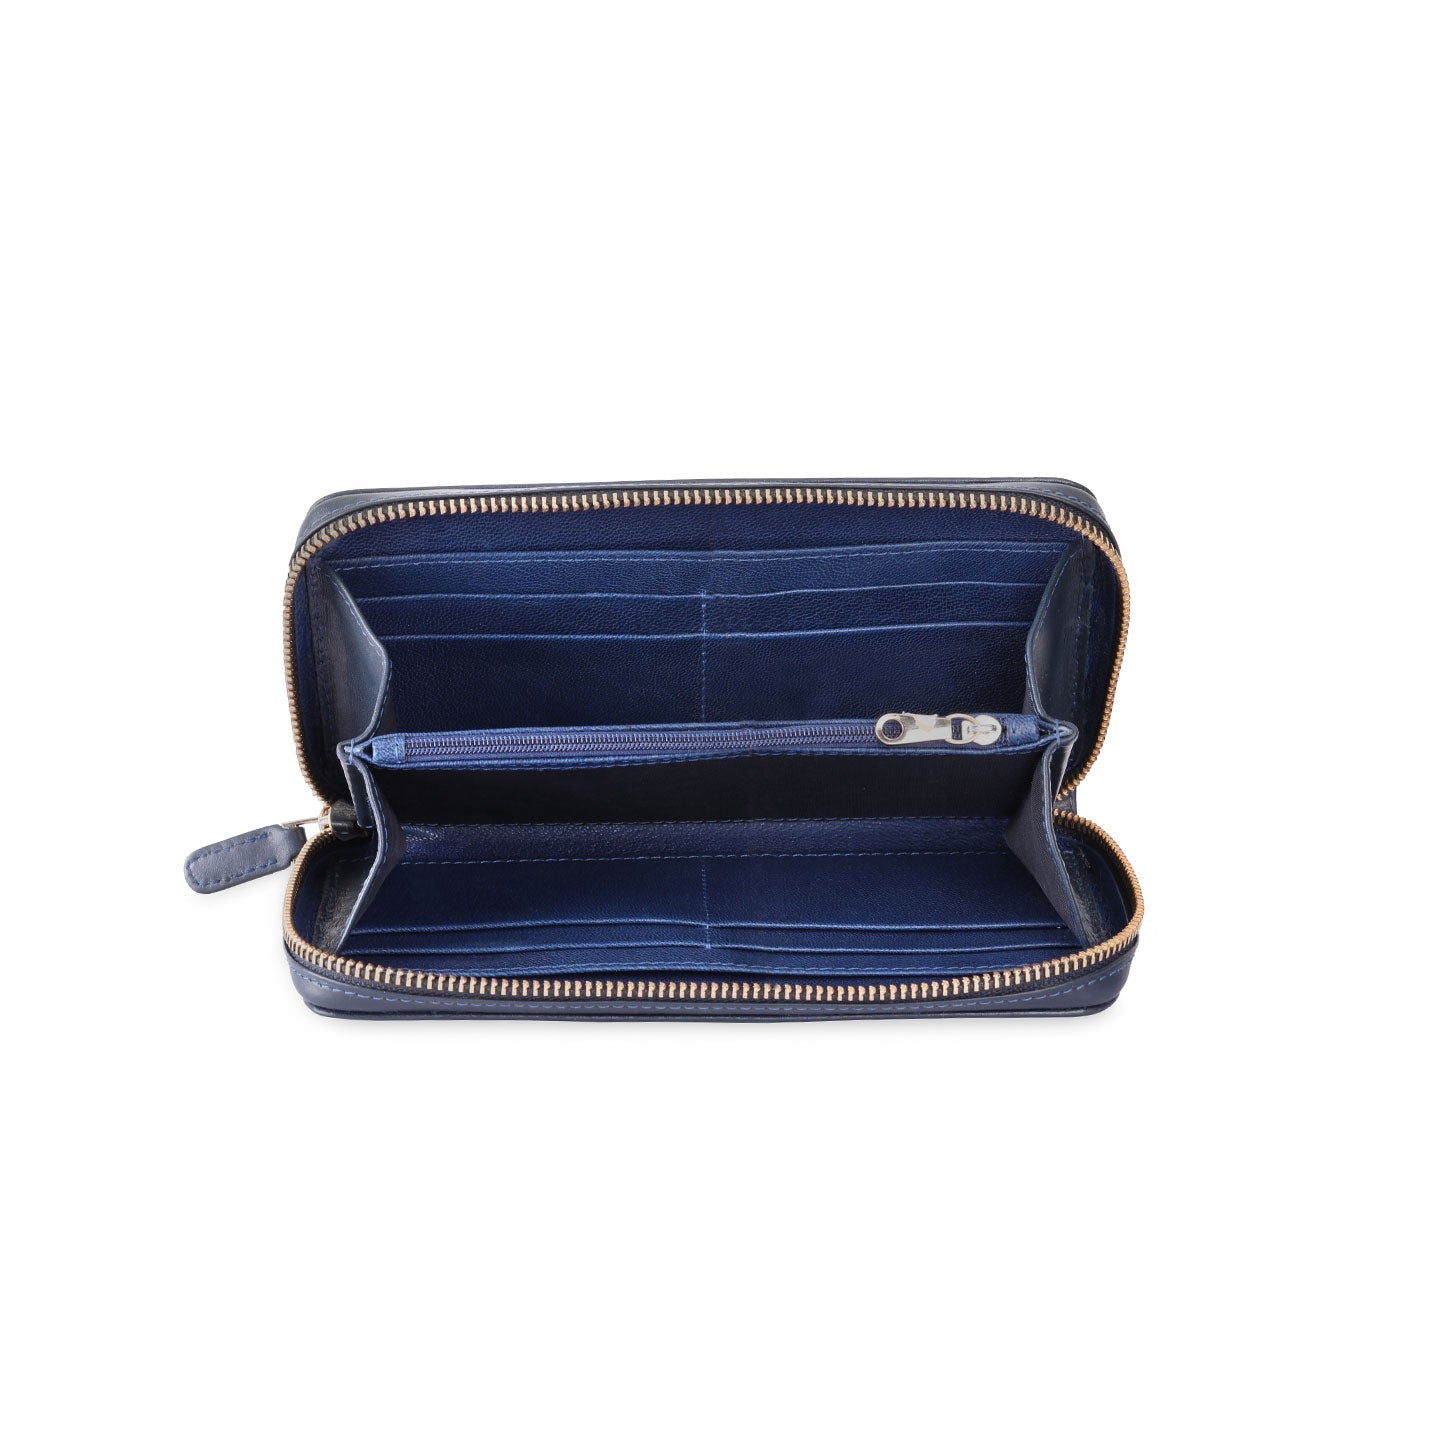 Blue wallet - bag